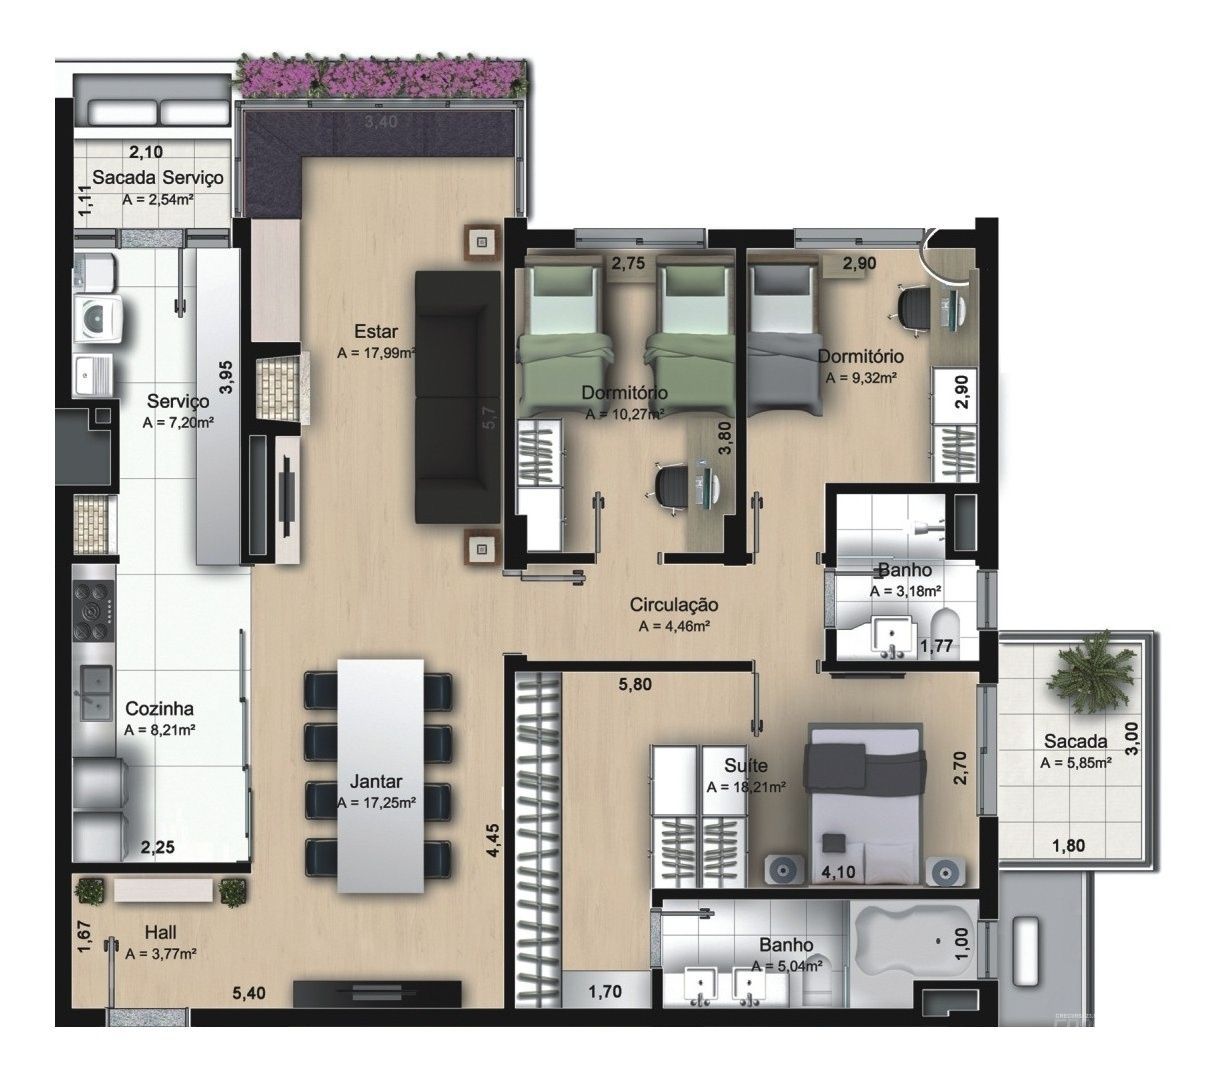 Apartamento com 3 Dormitórios à venda, 137 m² valor a combinar